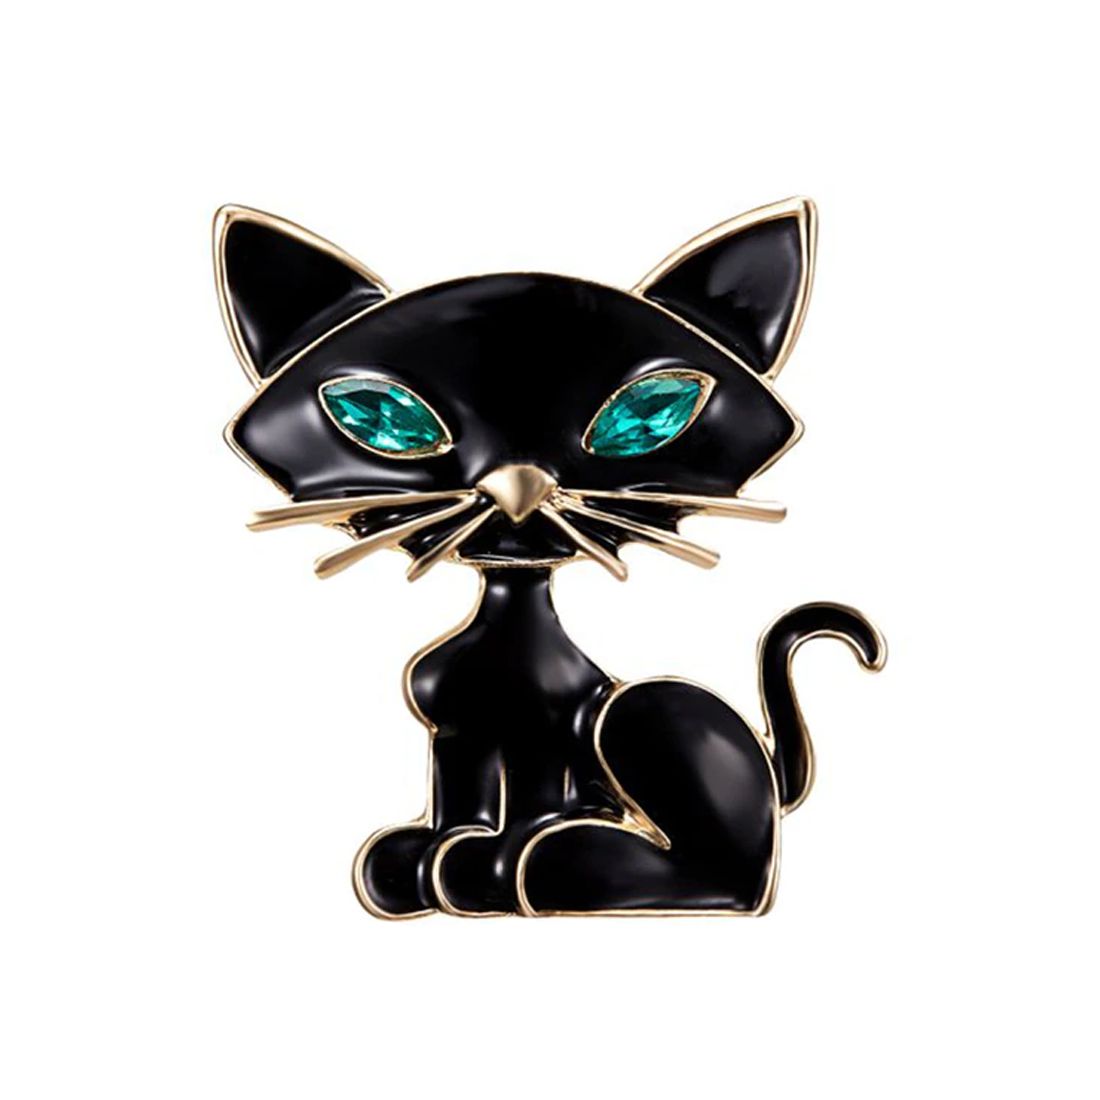 Broche chat noir aux yeux bleus - Strass et émaillé